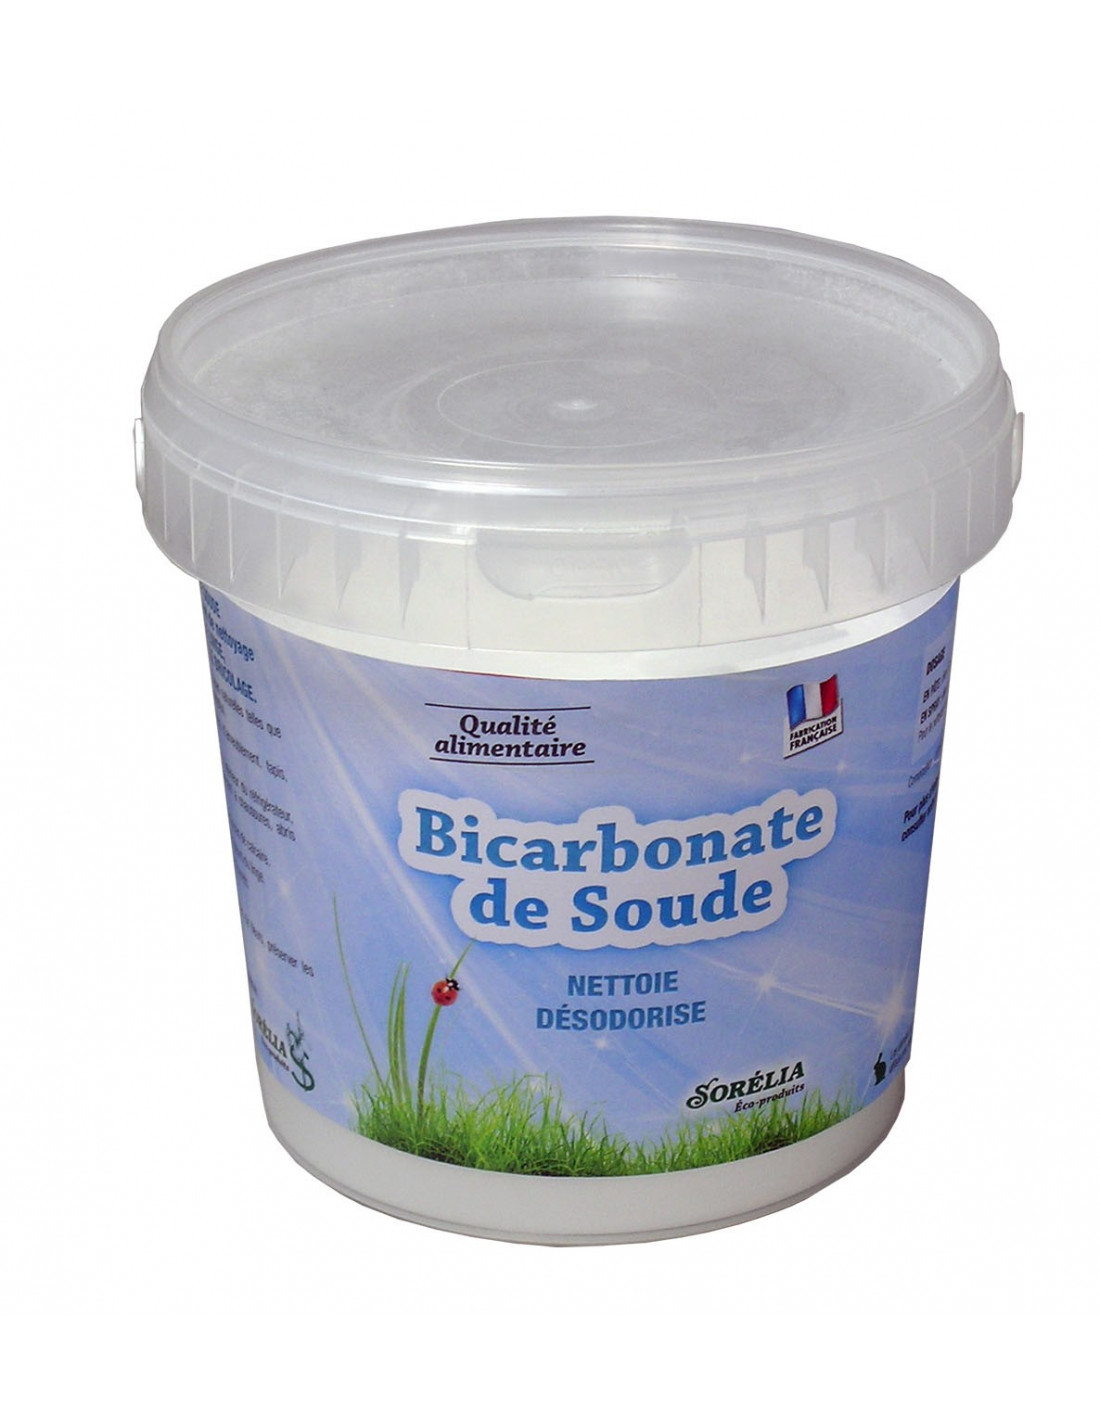 Acheter du bicarbonate de sodium de qualité alimentaire bicarbonate de soude